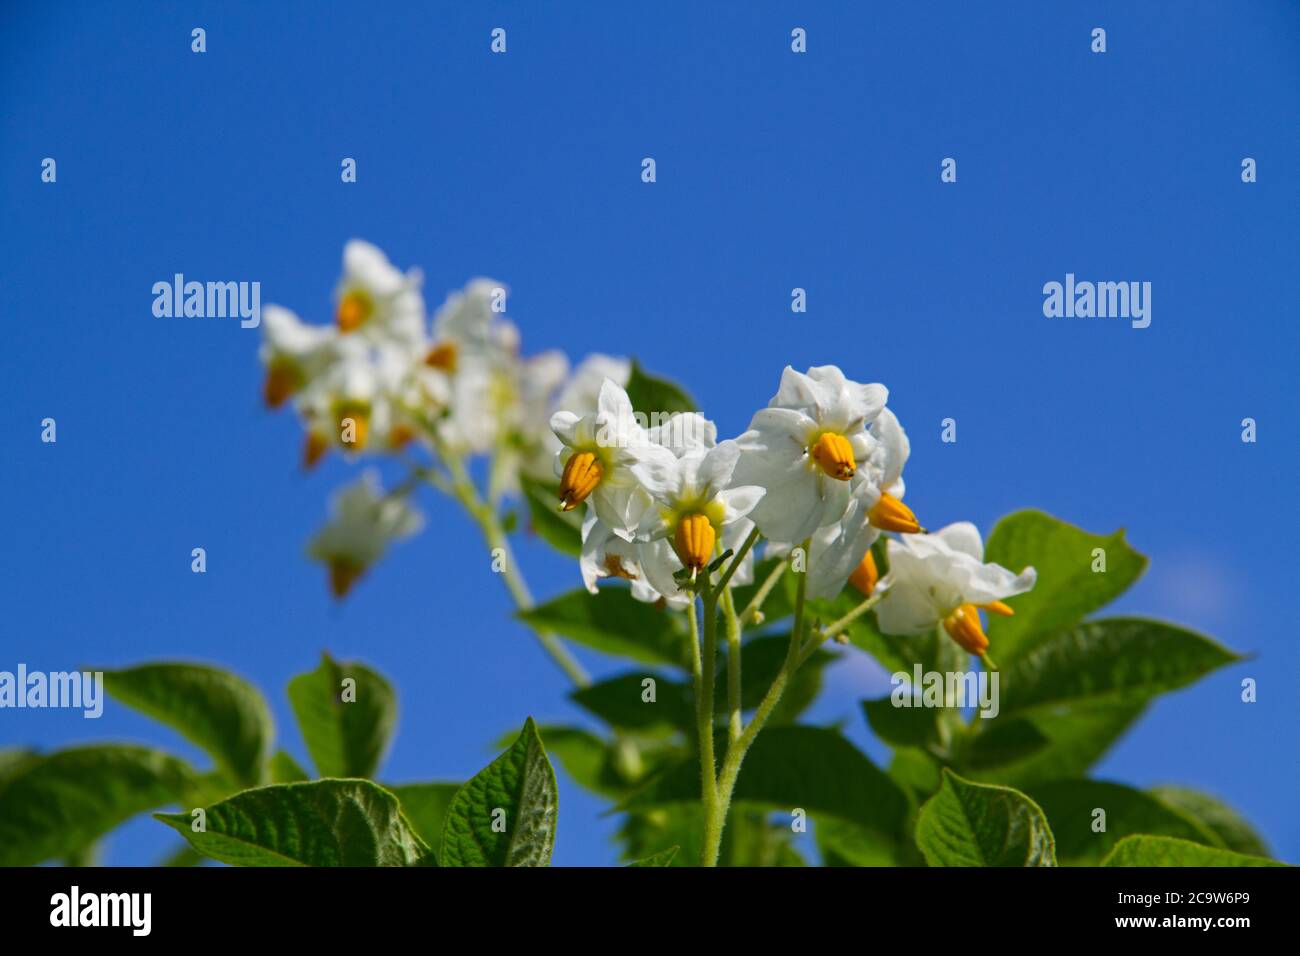 Fiori di una pianta di patata con petali bianchi e stami gialli contro un cielo blu Foto Stock